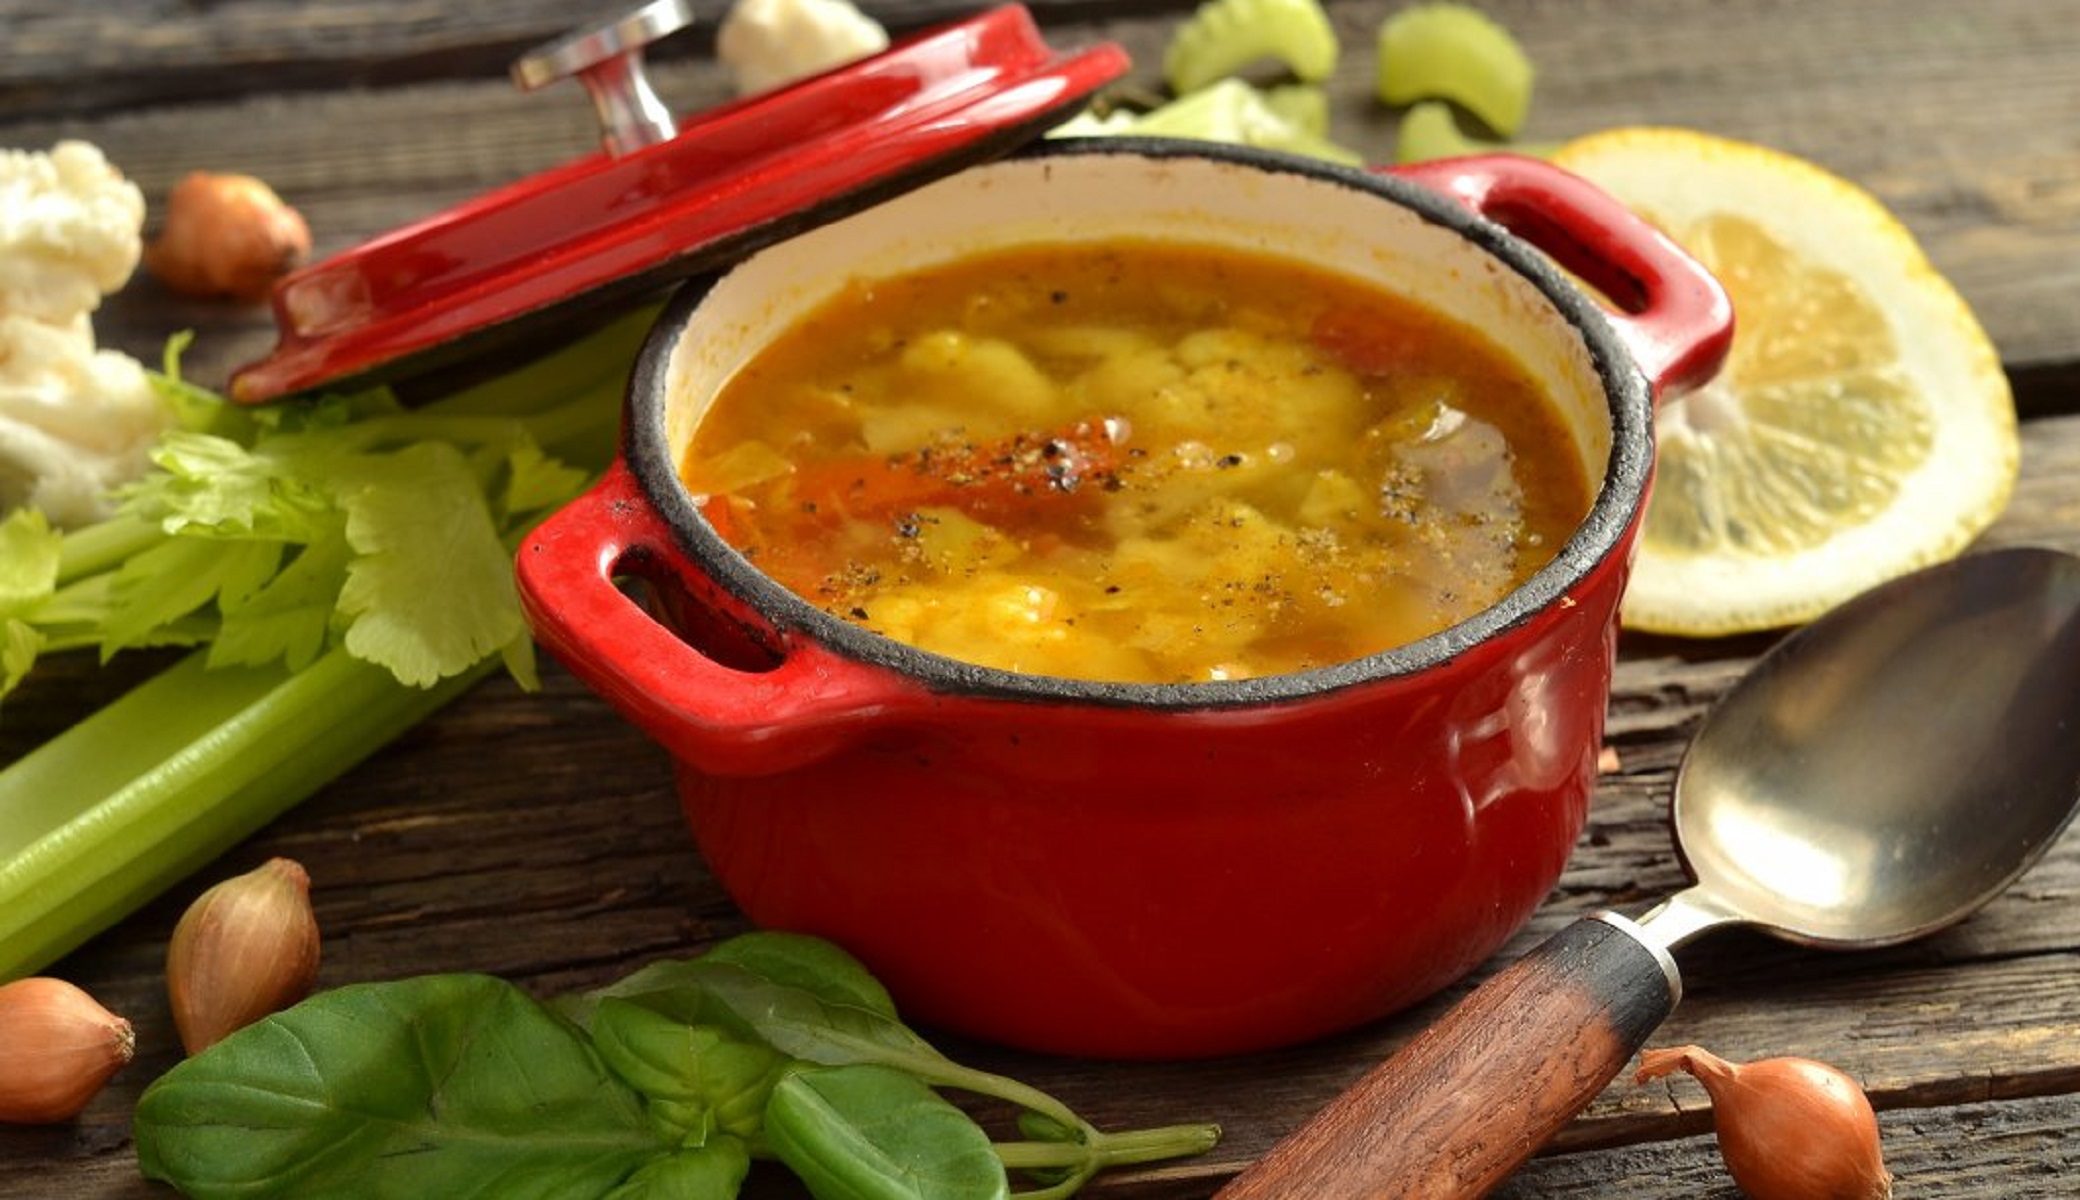 Блюда, которые не полнят. Рецепты низкокалорийных супов и щей | Аргументы и Факты